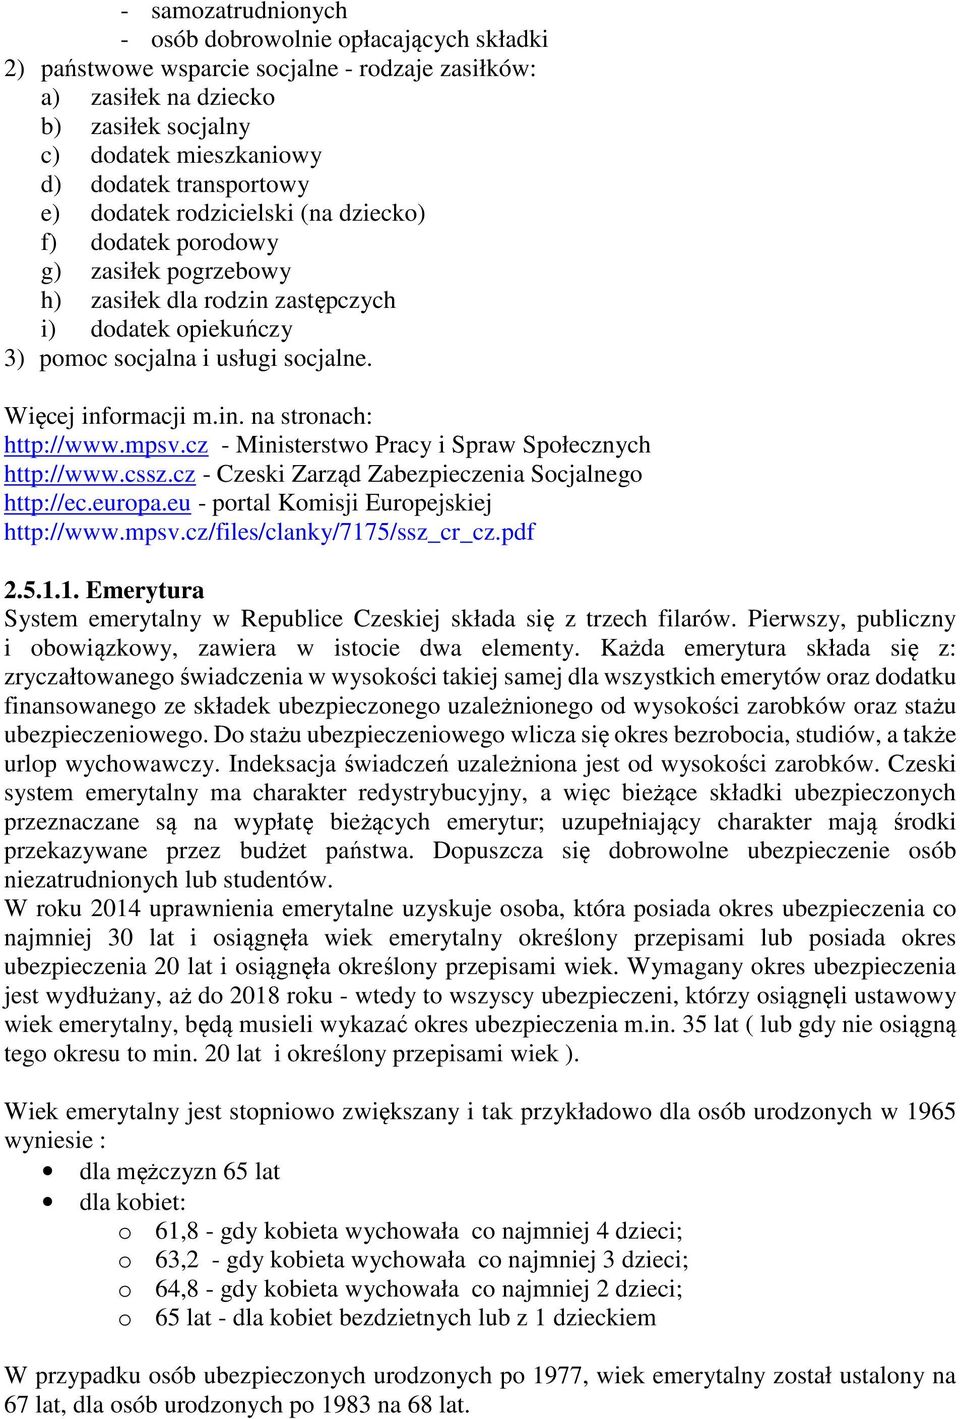 mpsv.cz - Ministerstwo Pracy i Spraw Społecznych http://www.cssz.cz - Czeski Zarząd Zabezpieczenia Socjalnego http://ec.europa.eu - portal Komisji Europejskiej http://www.mpsv.cz/files/clanky/7175/ssz_cr_cz.